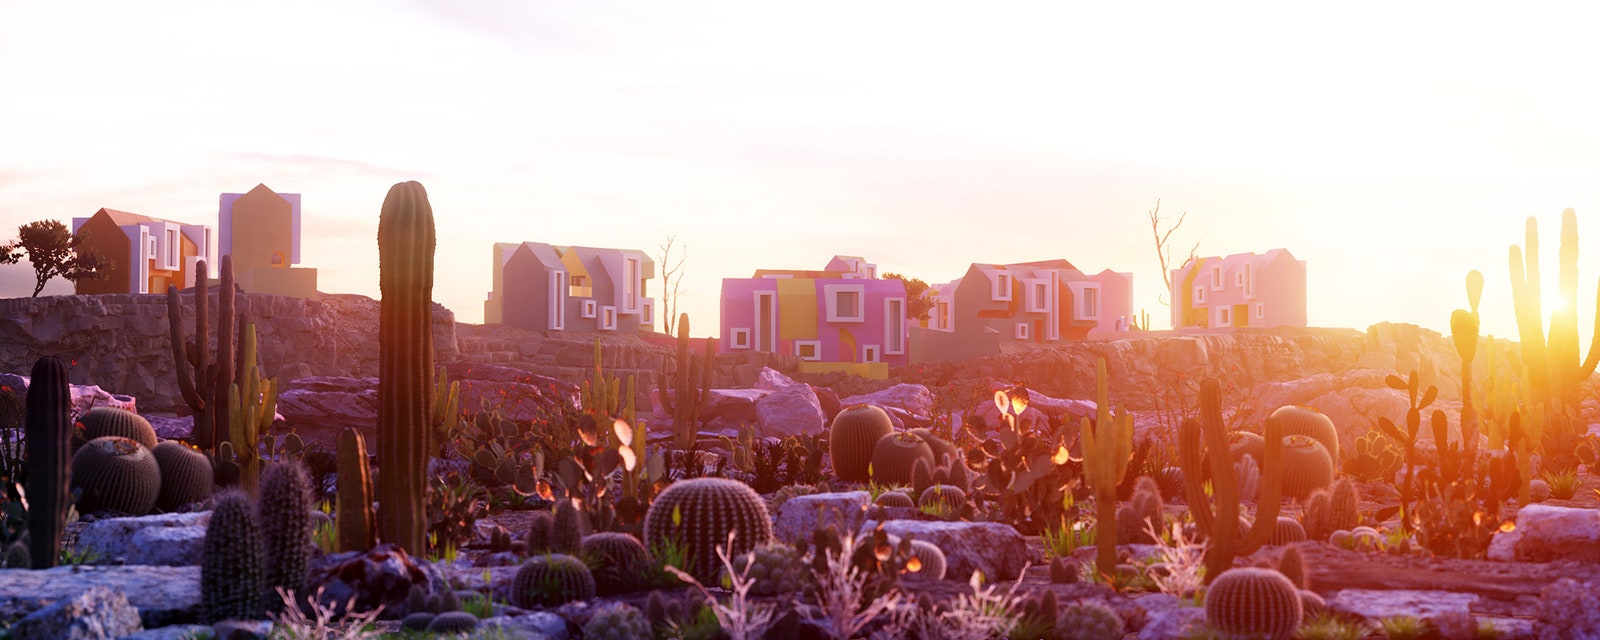 Воображаемое поселение Sonora Art Village в Мексике